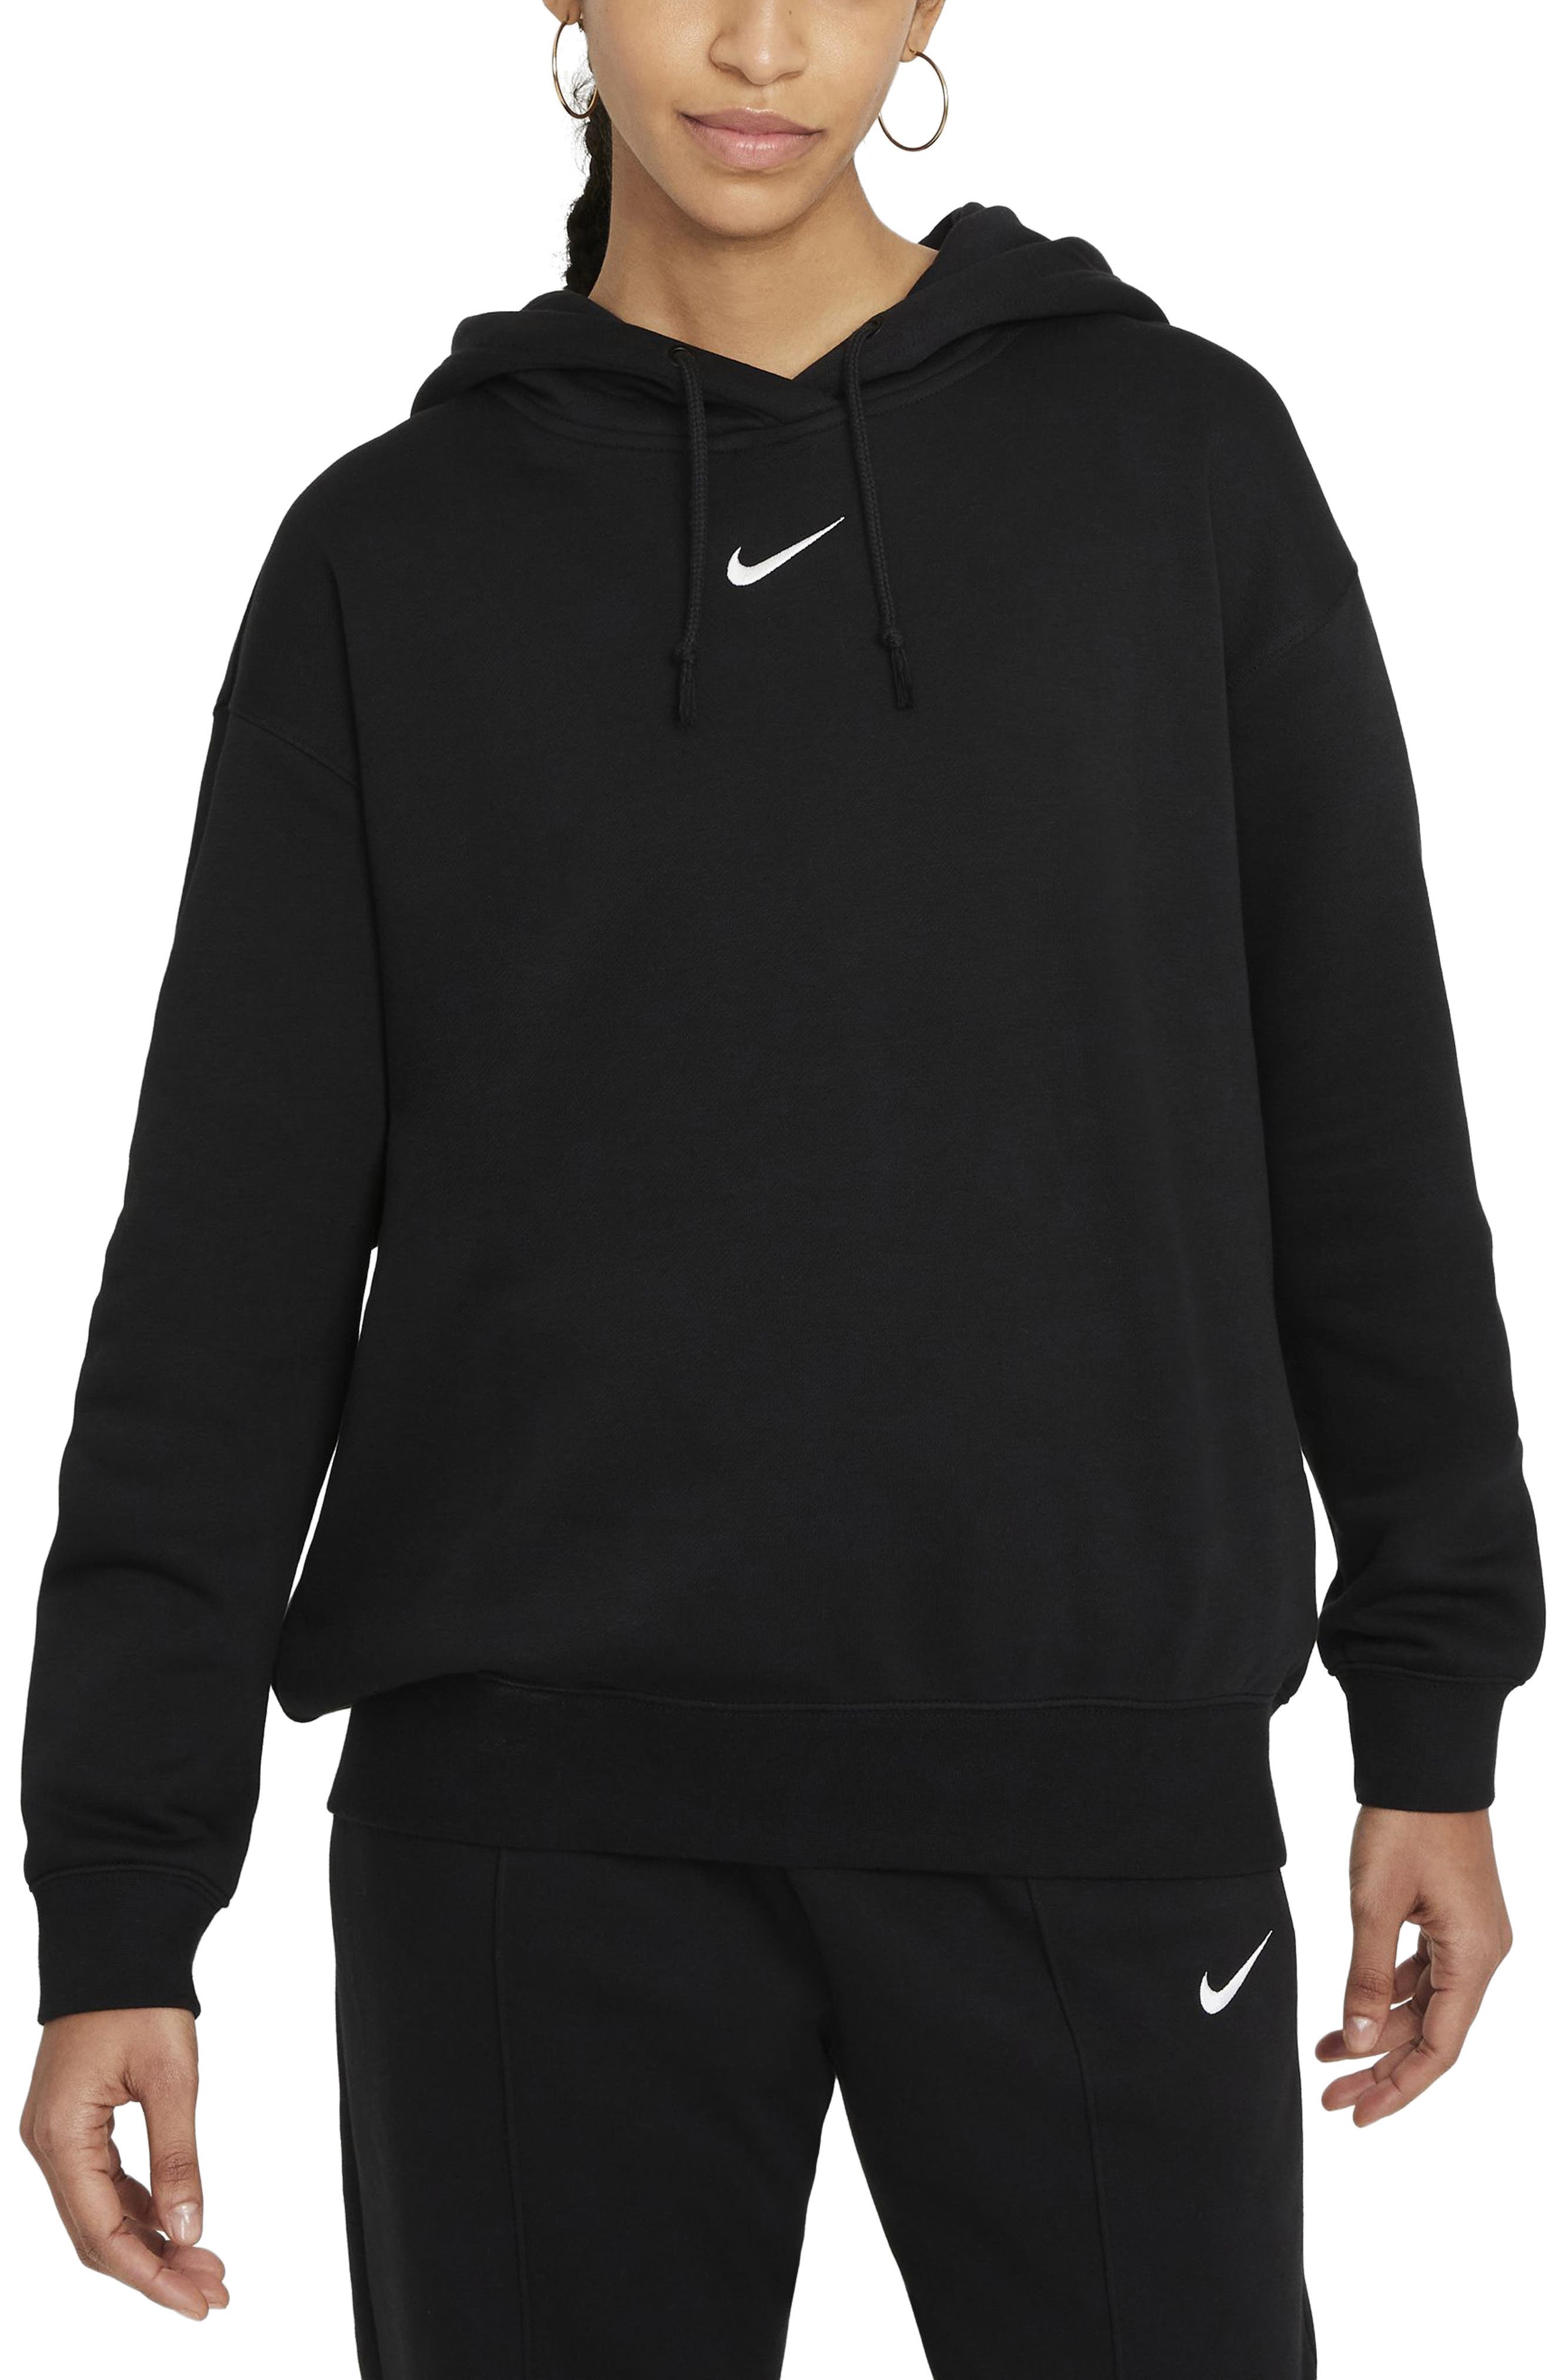 Men's Hoodies Trackies Tops Casual Hooded Pullover Sweatshirt Jumper Sportswear 